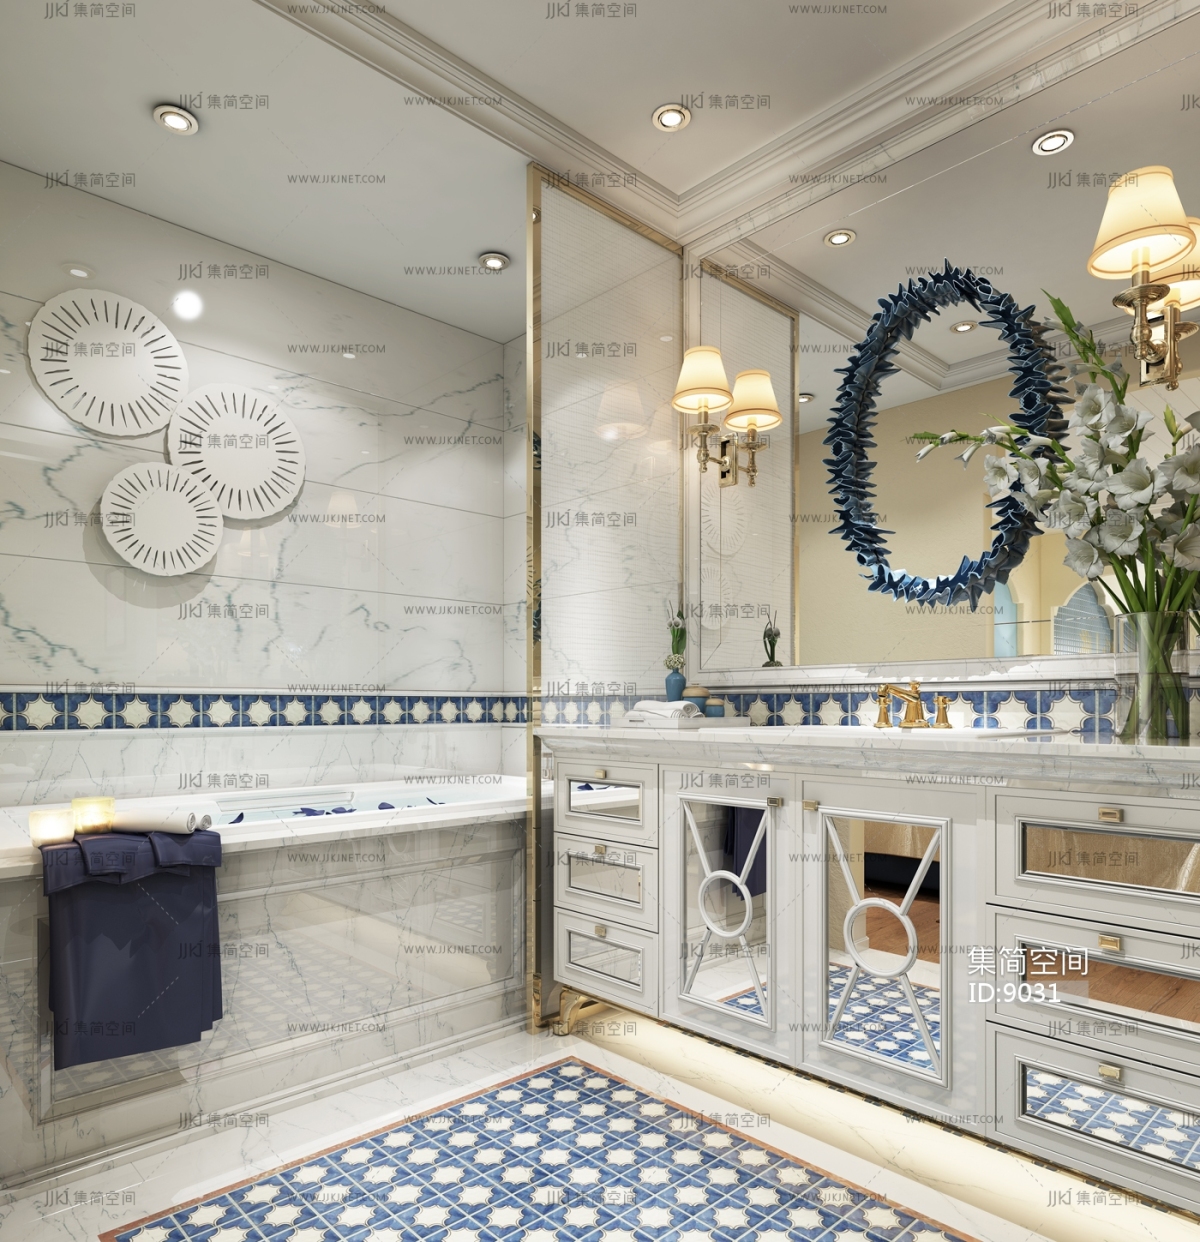 地中海风格三室一厅创意主卫生间洗手盆镜子仿古地砖装修图片 – 设计本装修效果图